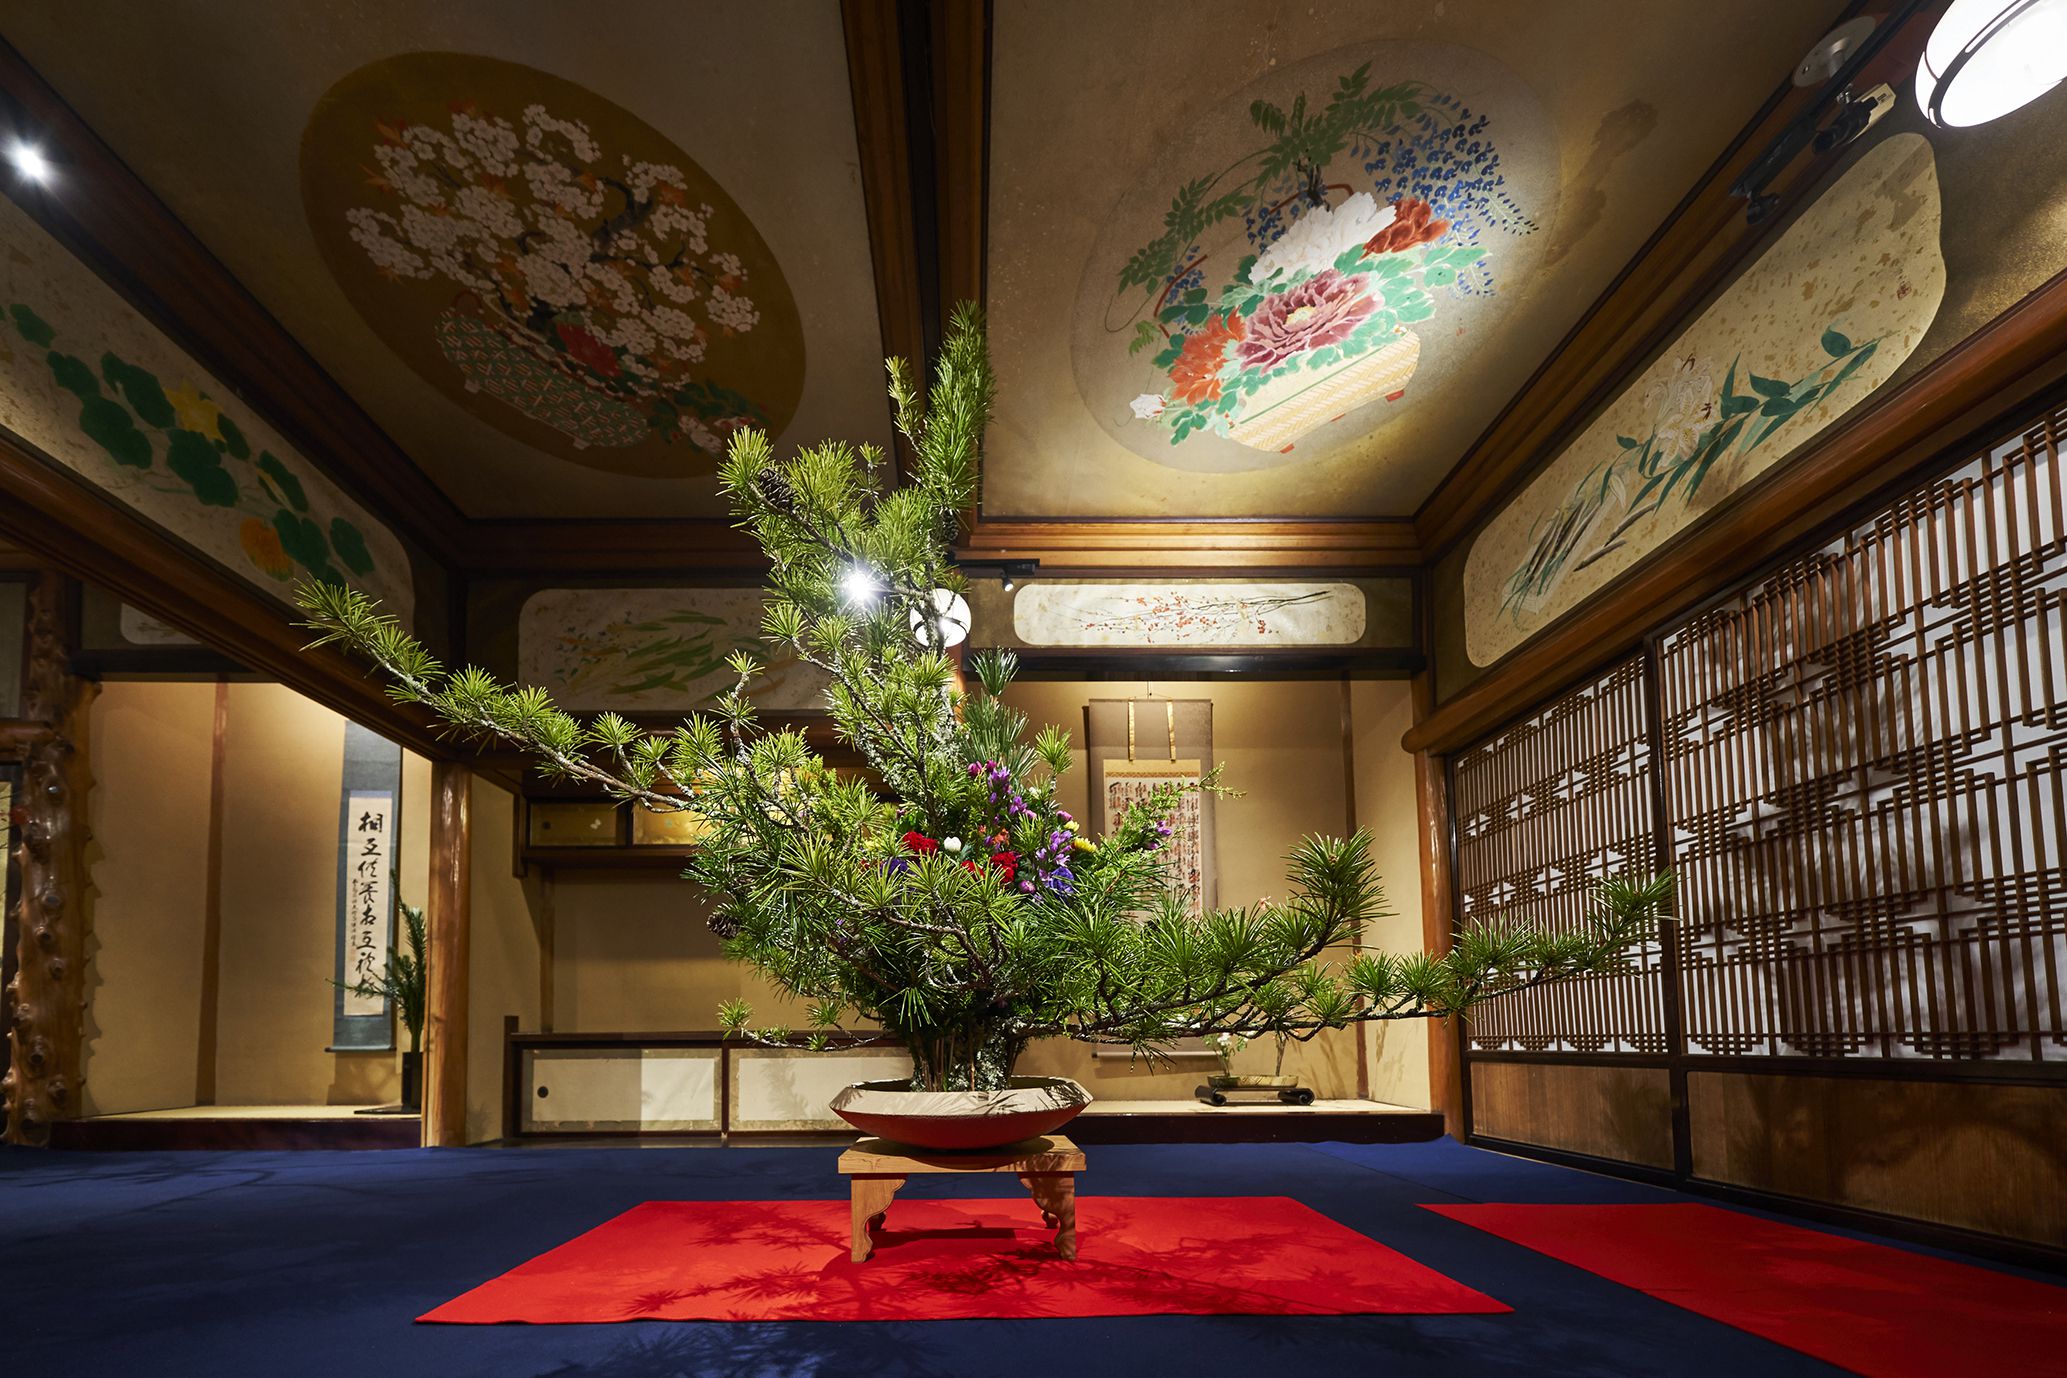 東京都指定有形文化財「百段階段」を舞台に毎週５流派以上の作品を鑑賞できる。